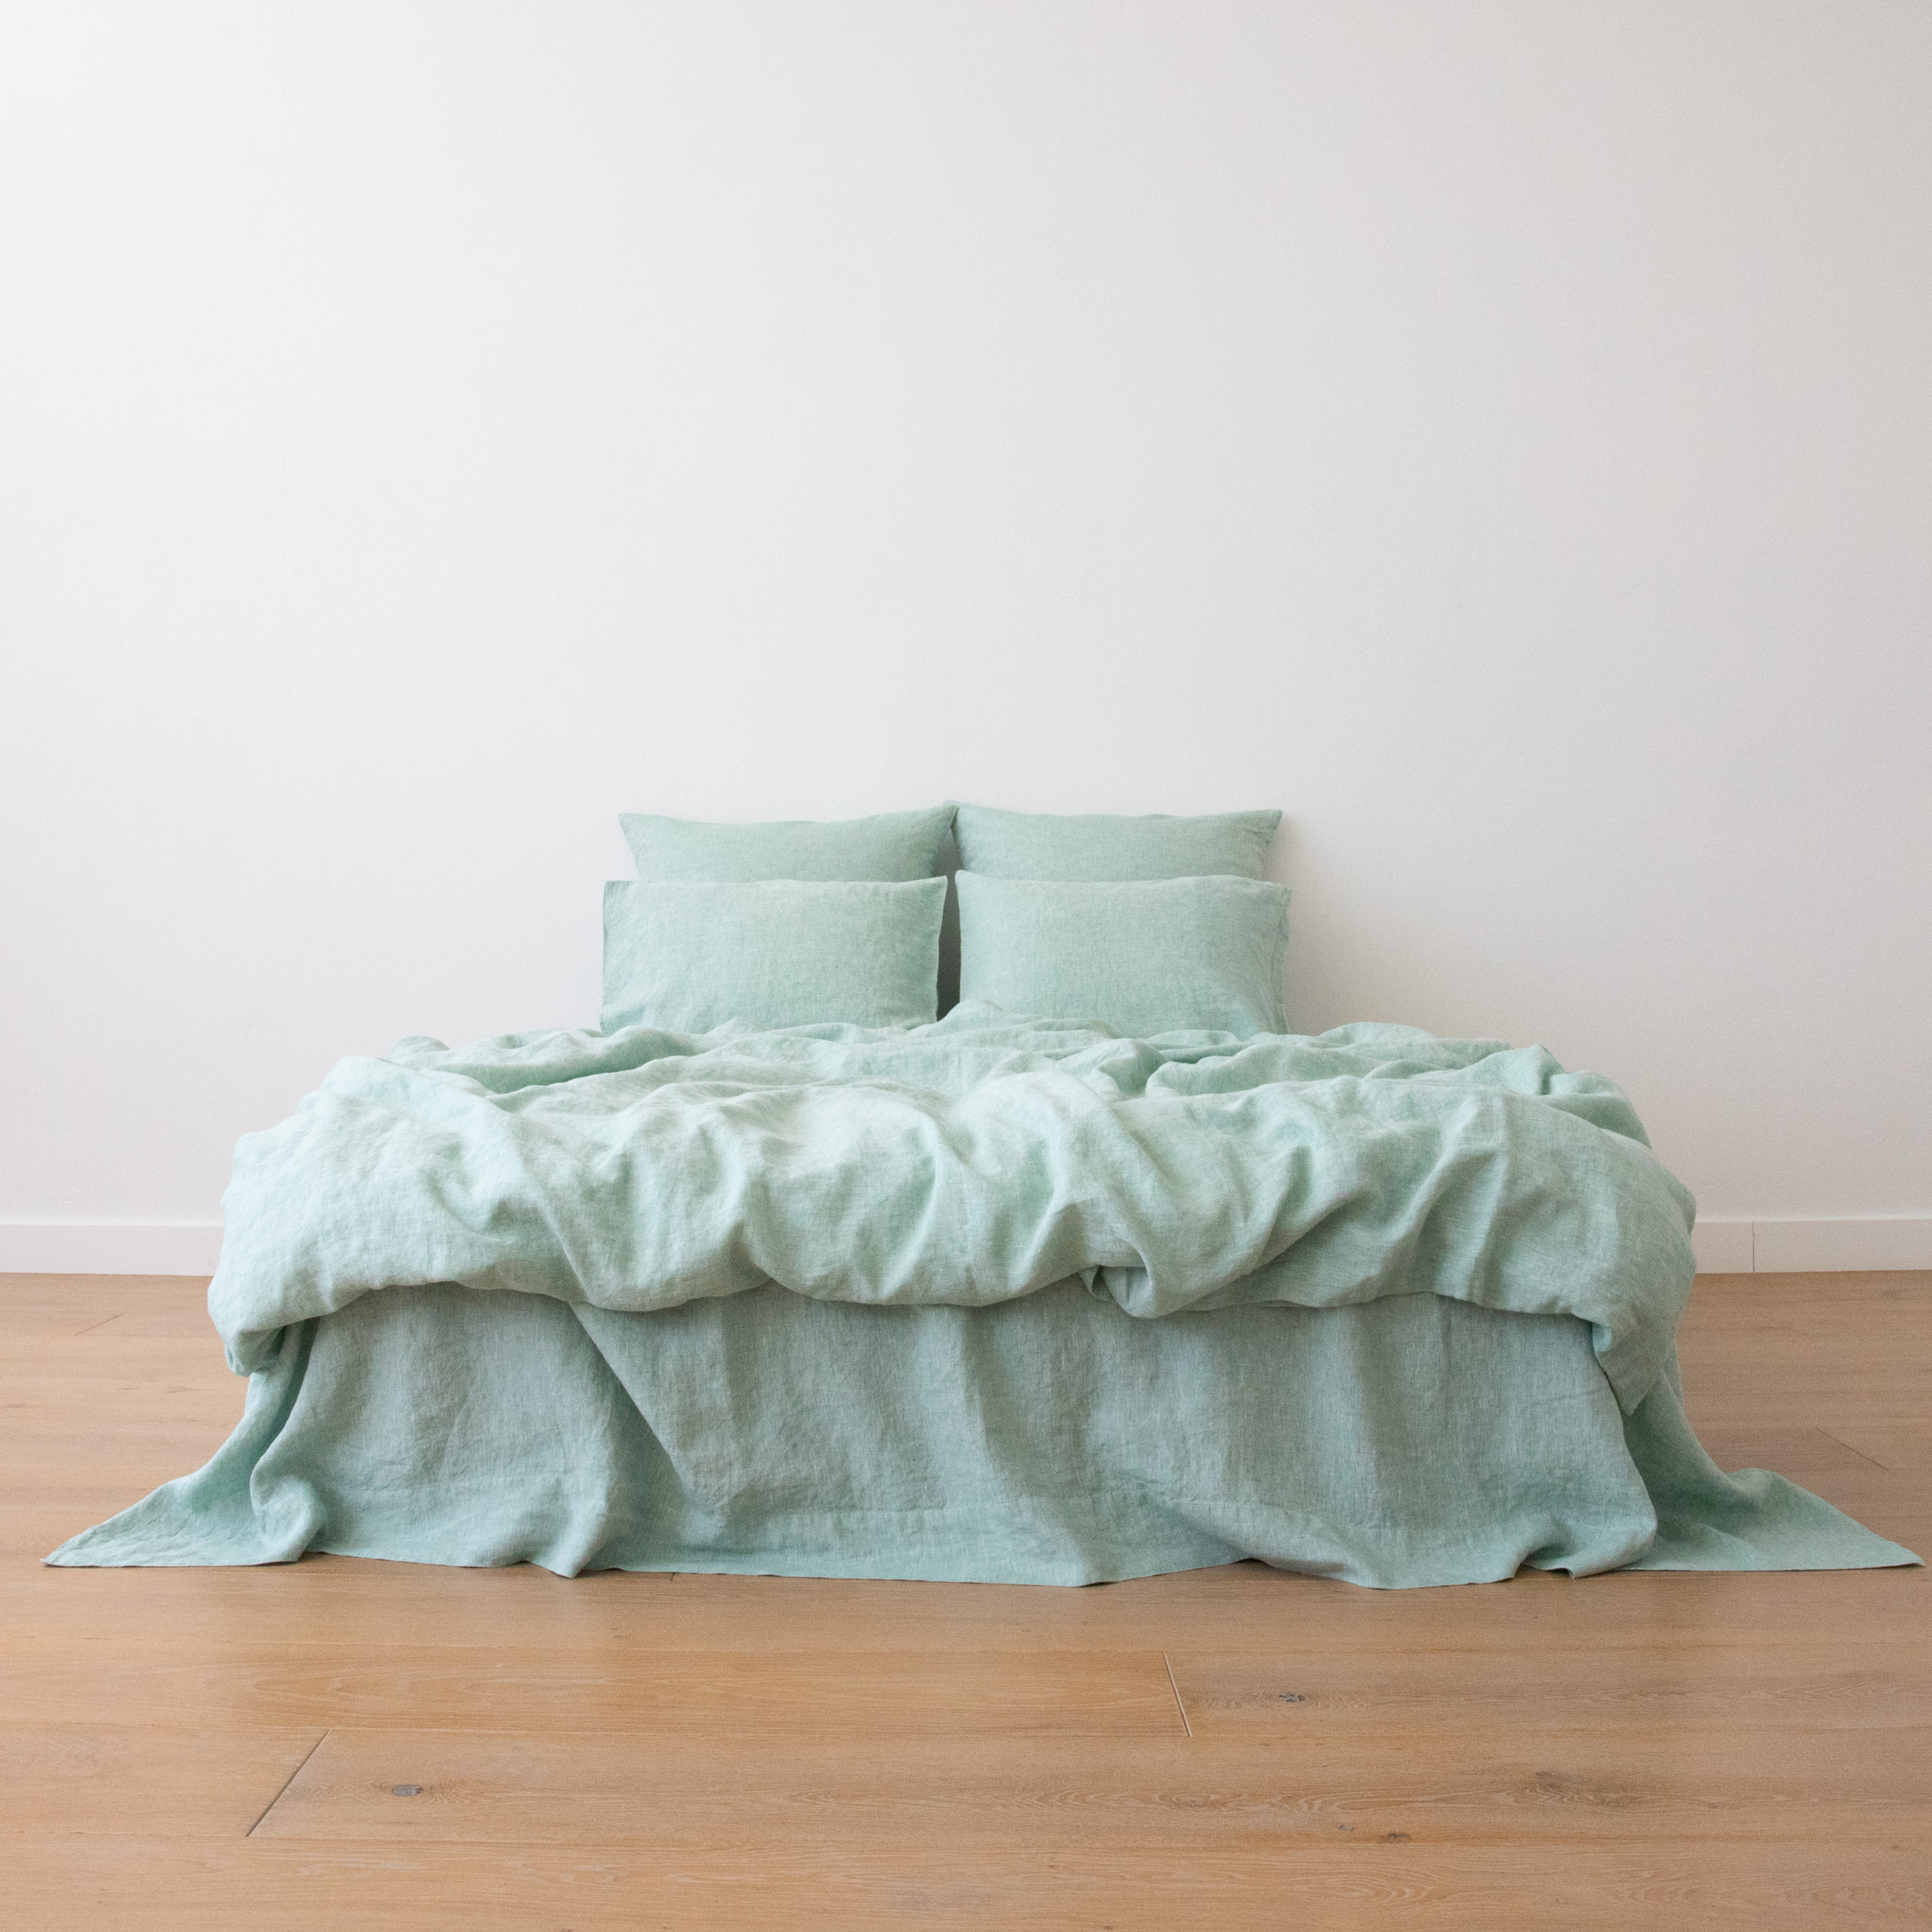 washed linen bedding mealnge green